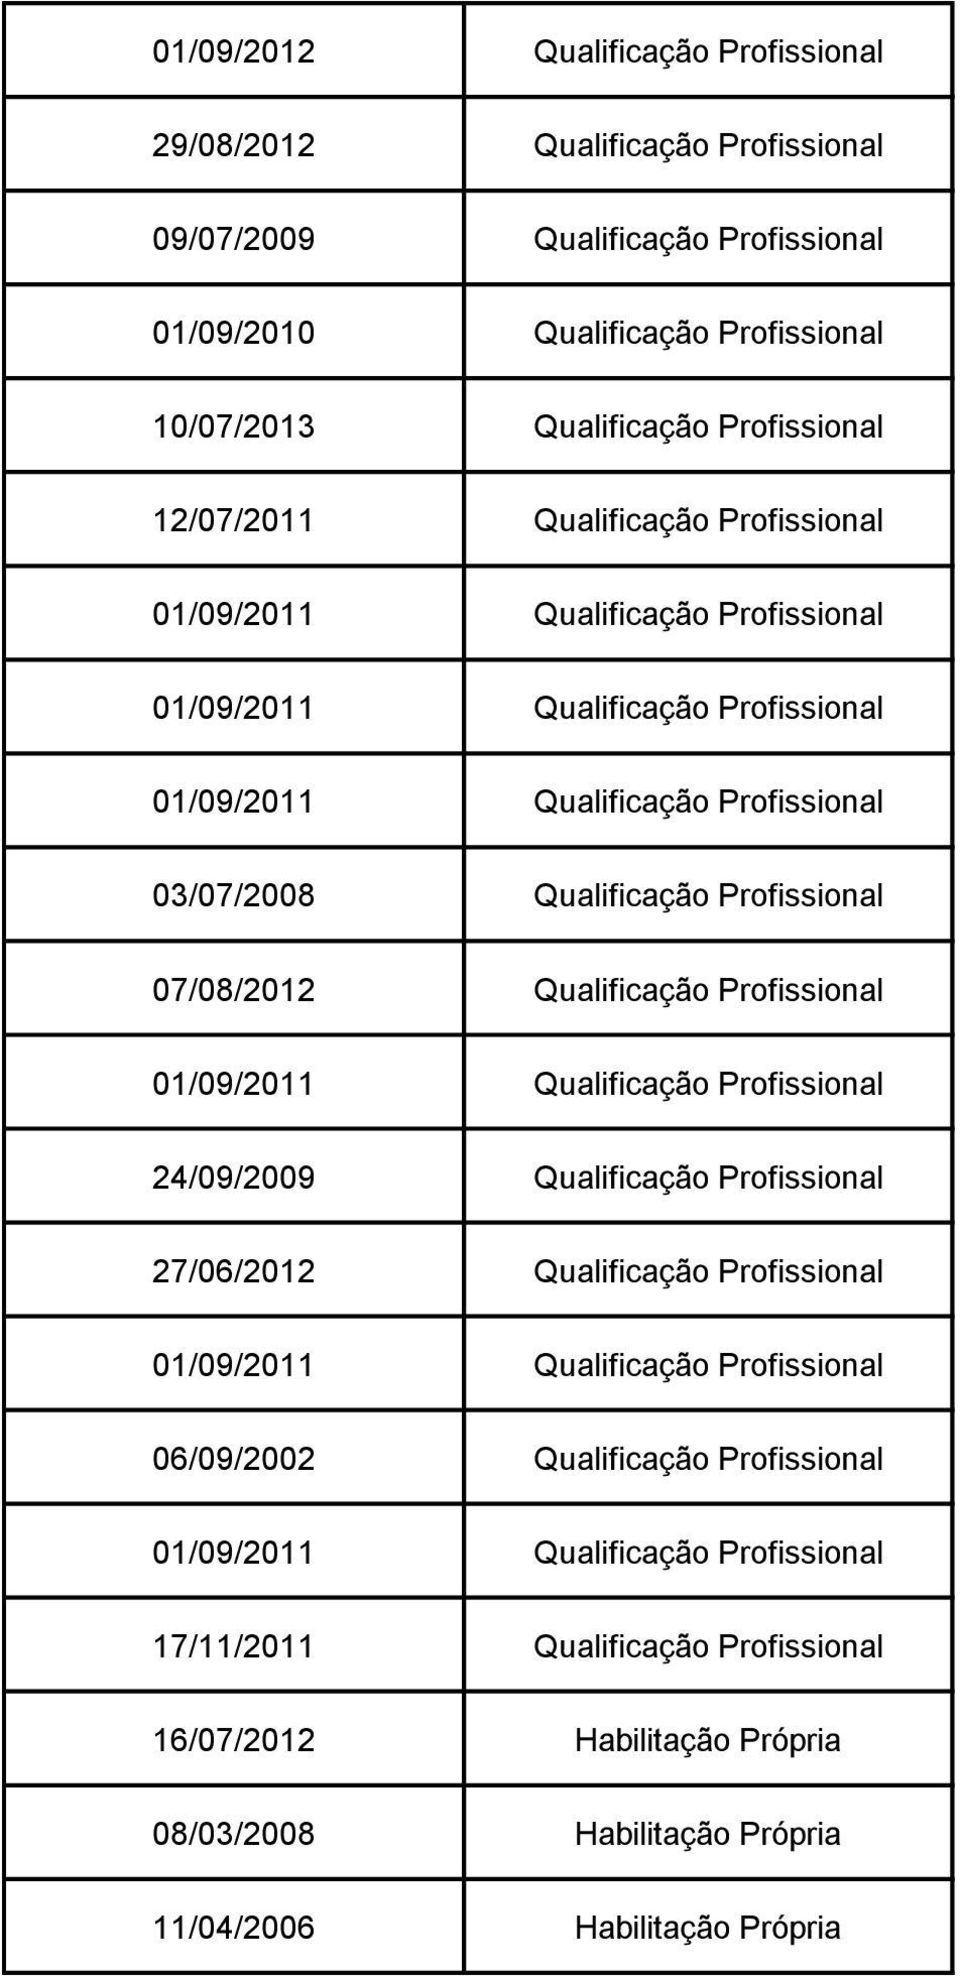 Profissional 07/08/2012 Qualificação Profissional 24/09/2009 Qualificação Profissional 27/06/2012 Qualificação Profissional